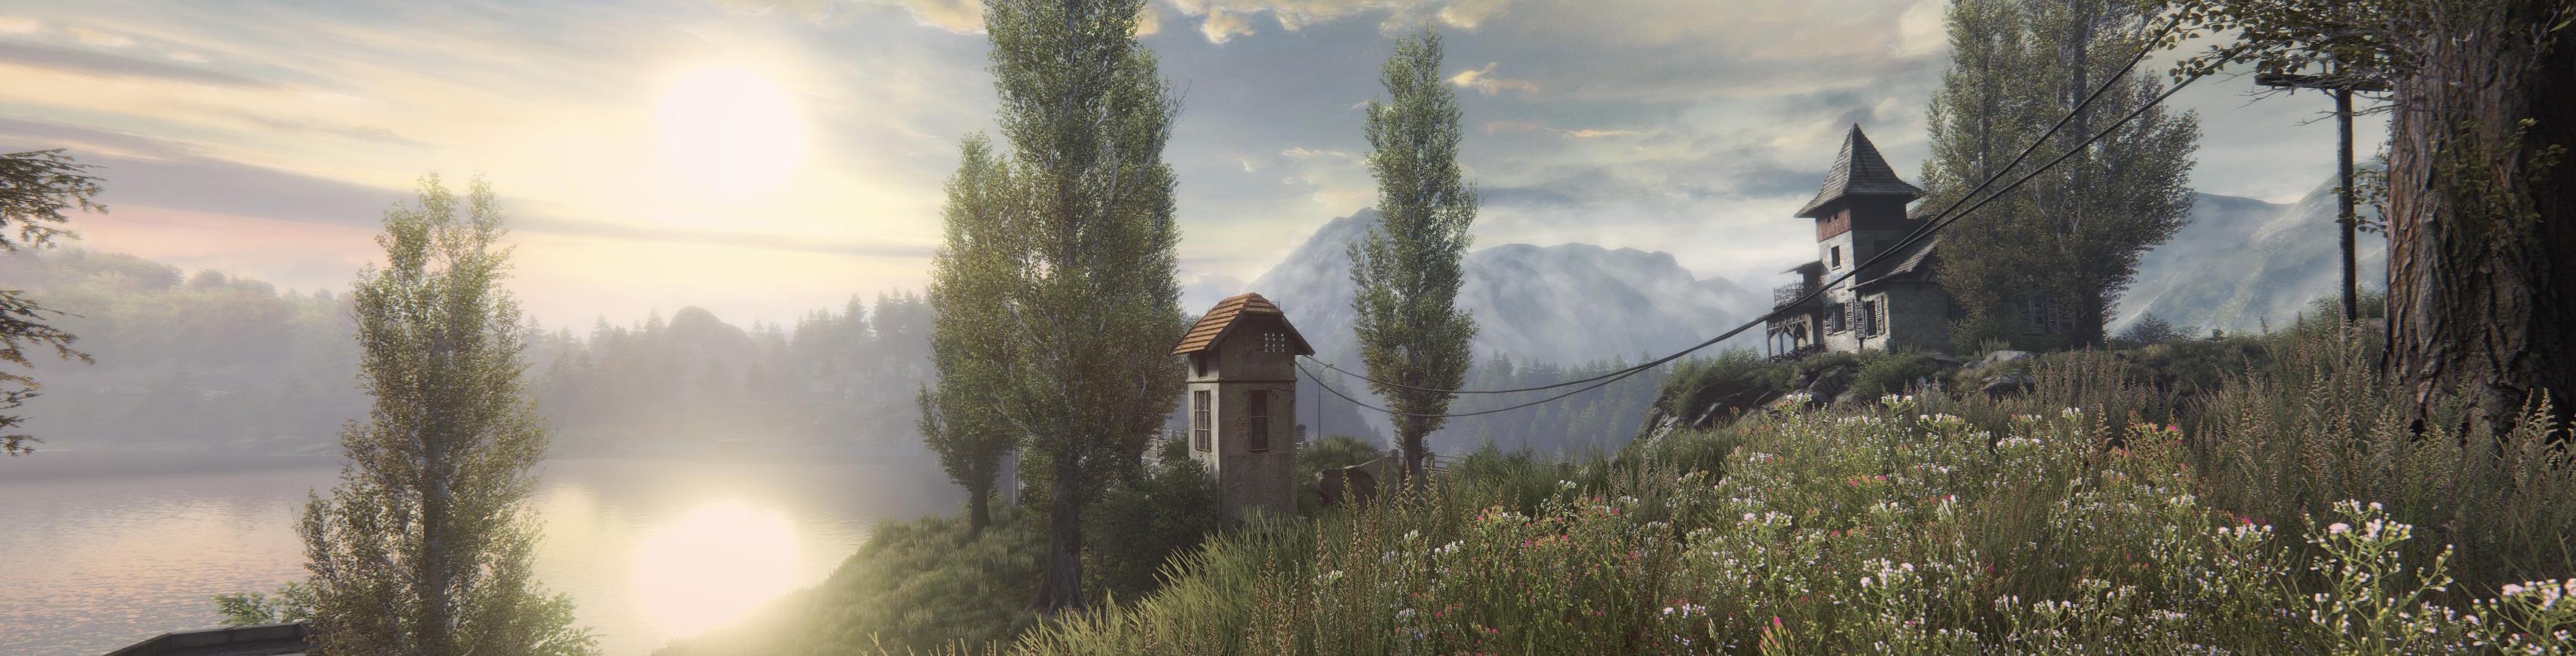 Obrazki dla Digital Foundry kontra Zaginięcie Ethana Cartera na Xbox One